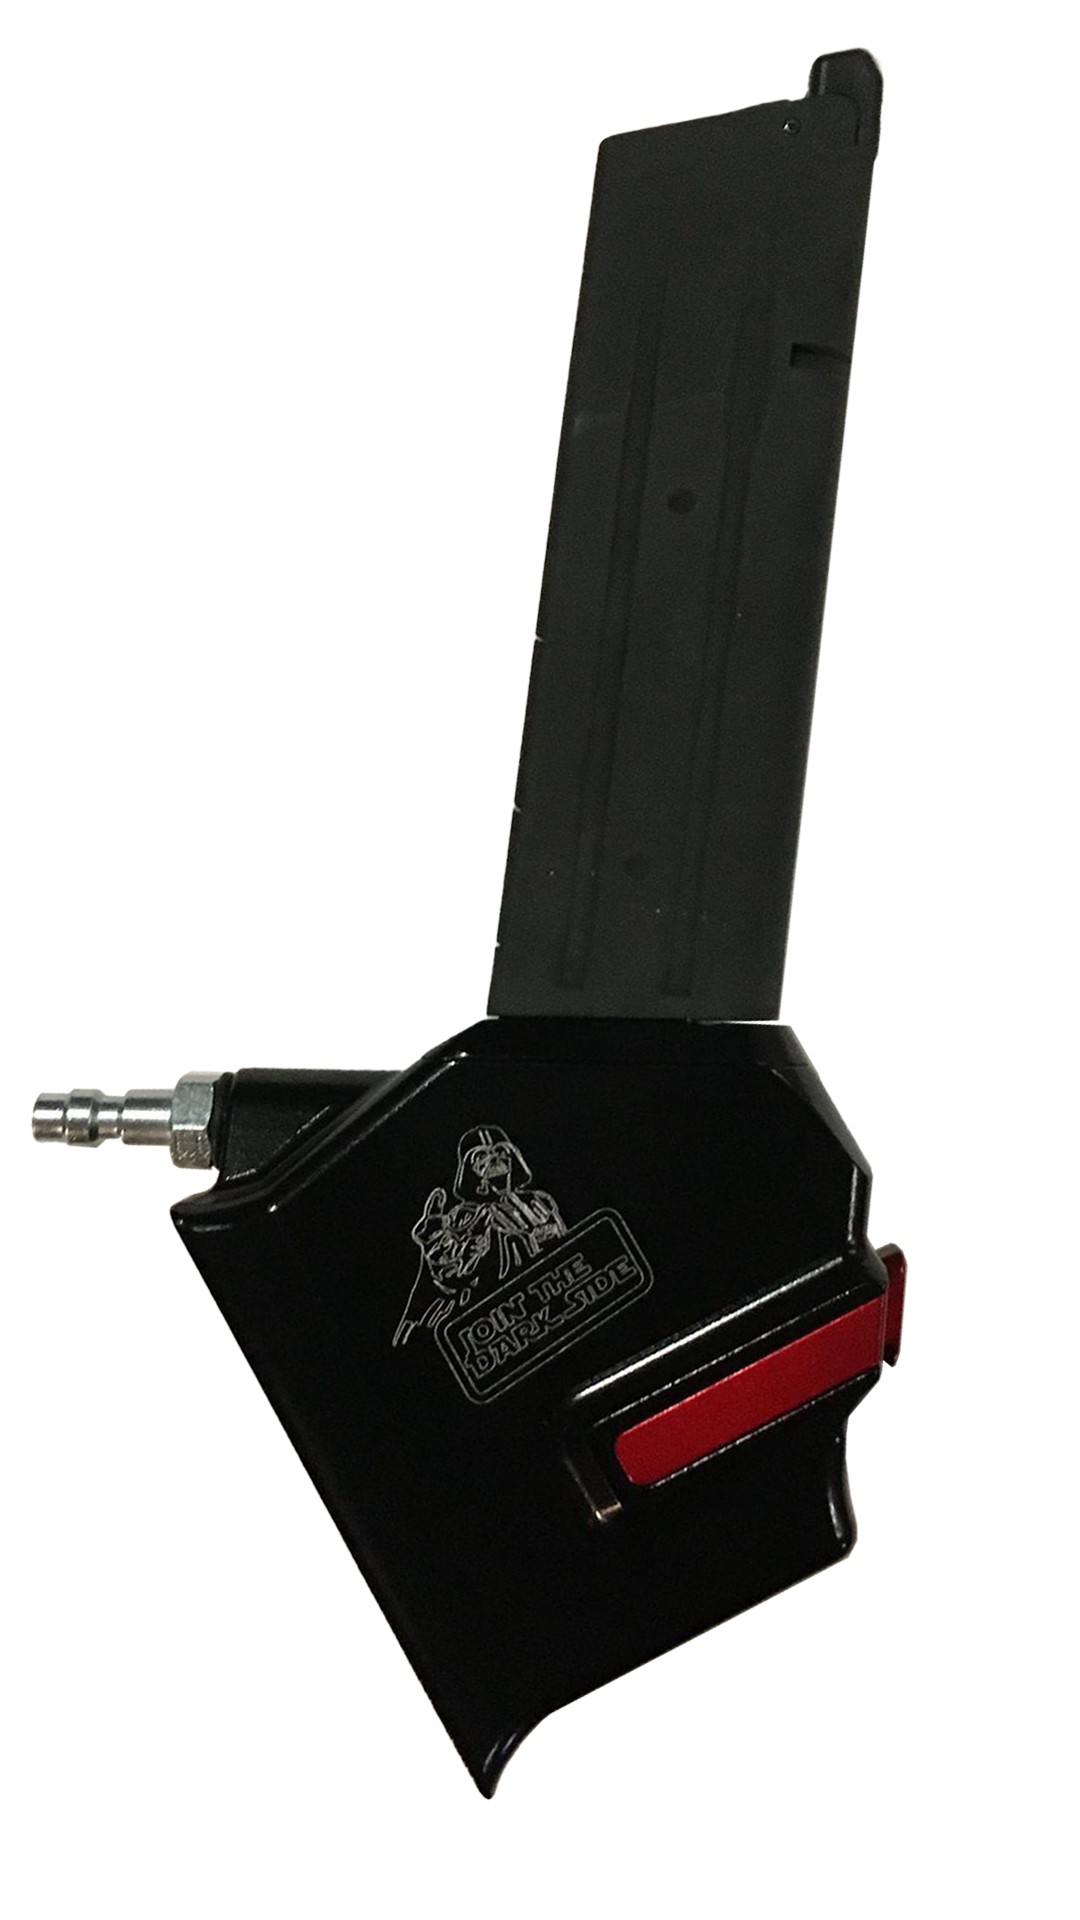 M-adapter 4YA for Hi-Capa (special 4-year anniversary Darth Vader edition)